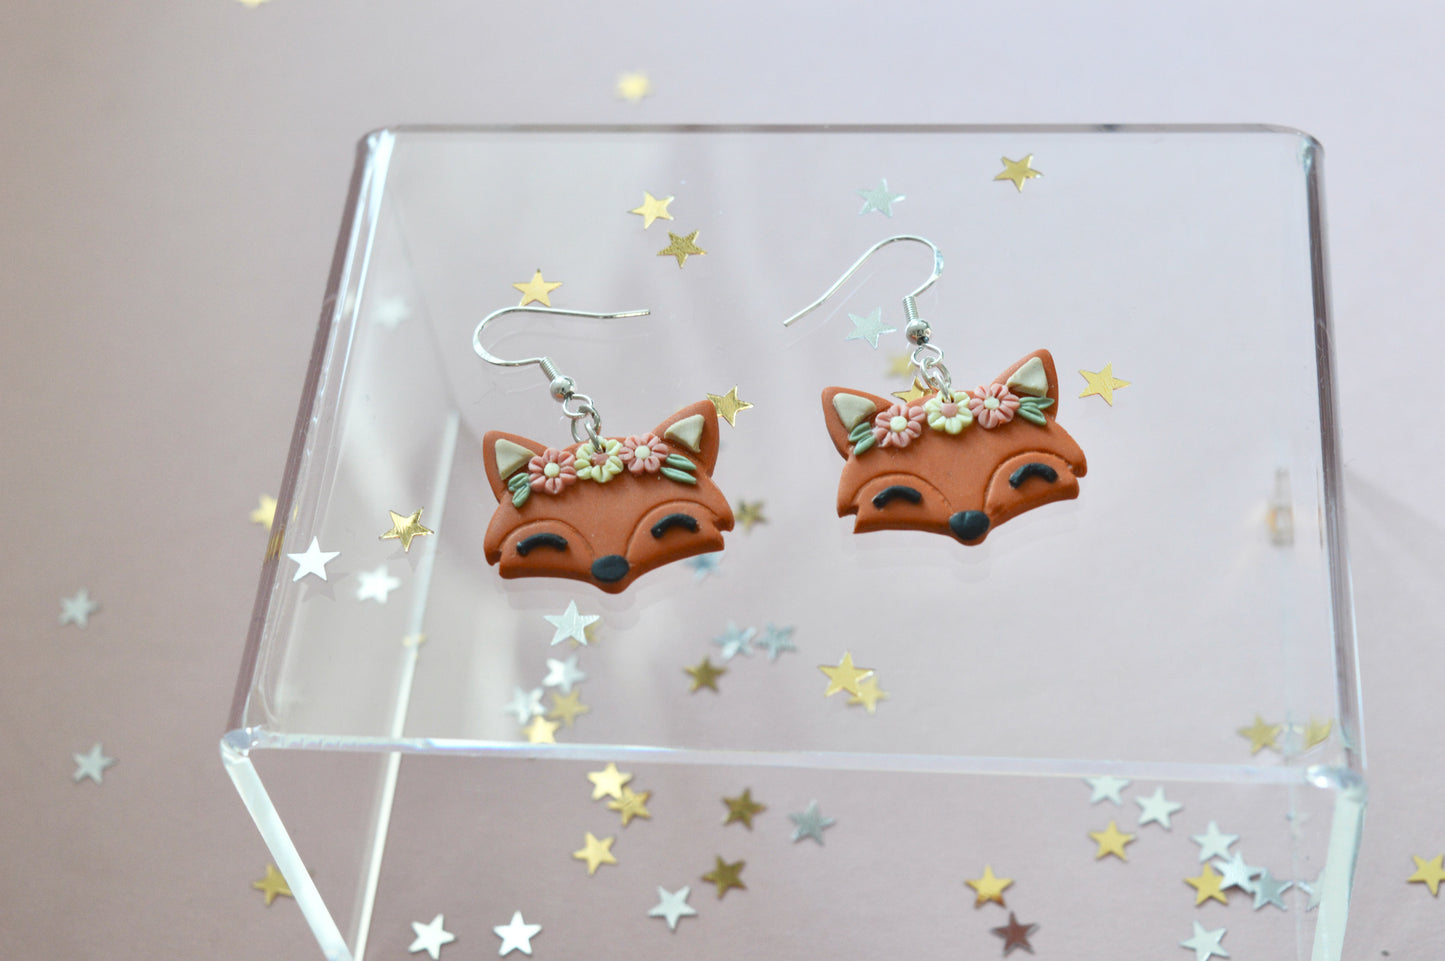 Foxy earrings